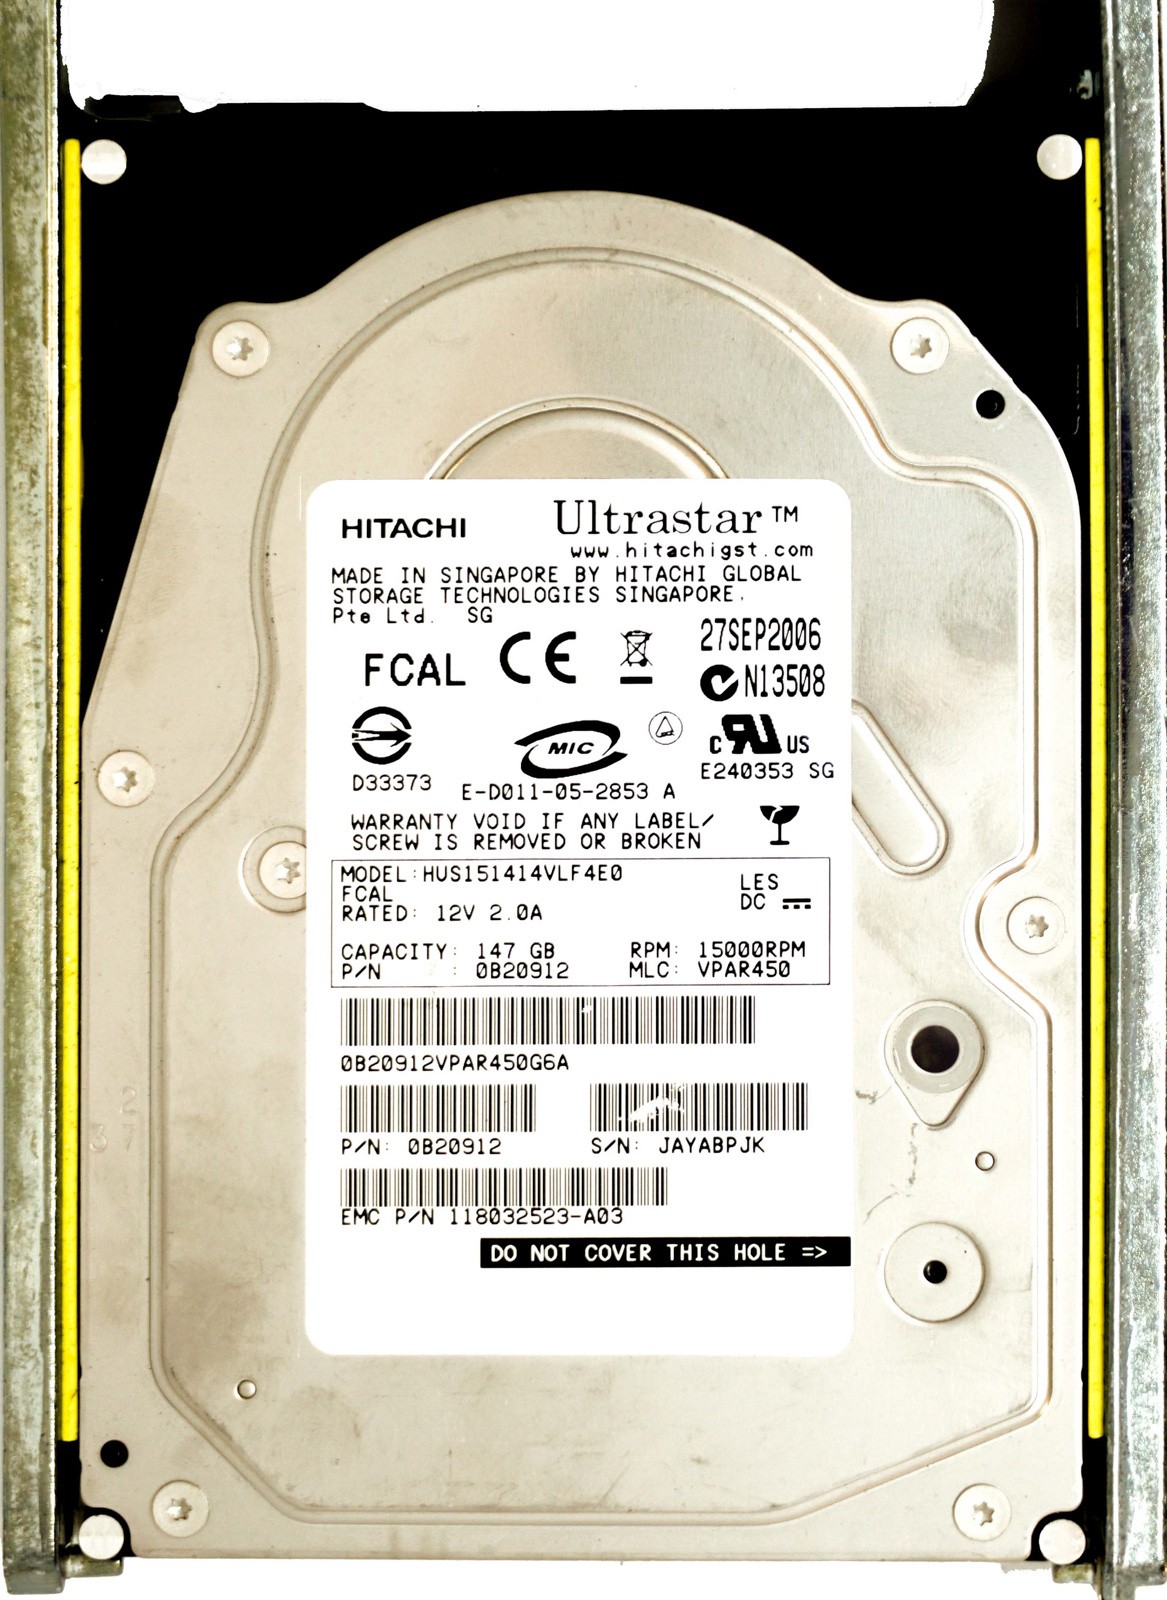 EMC (118032523) 146GB FCAL (LFF) 4Gb/s 15K in Hot-Swap Caddy